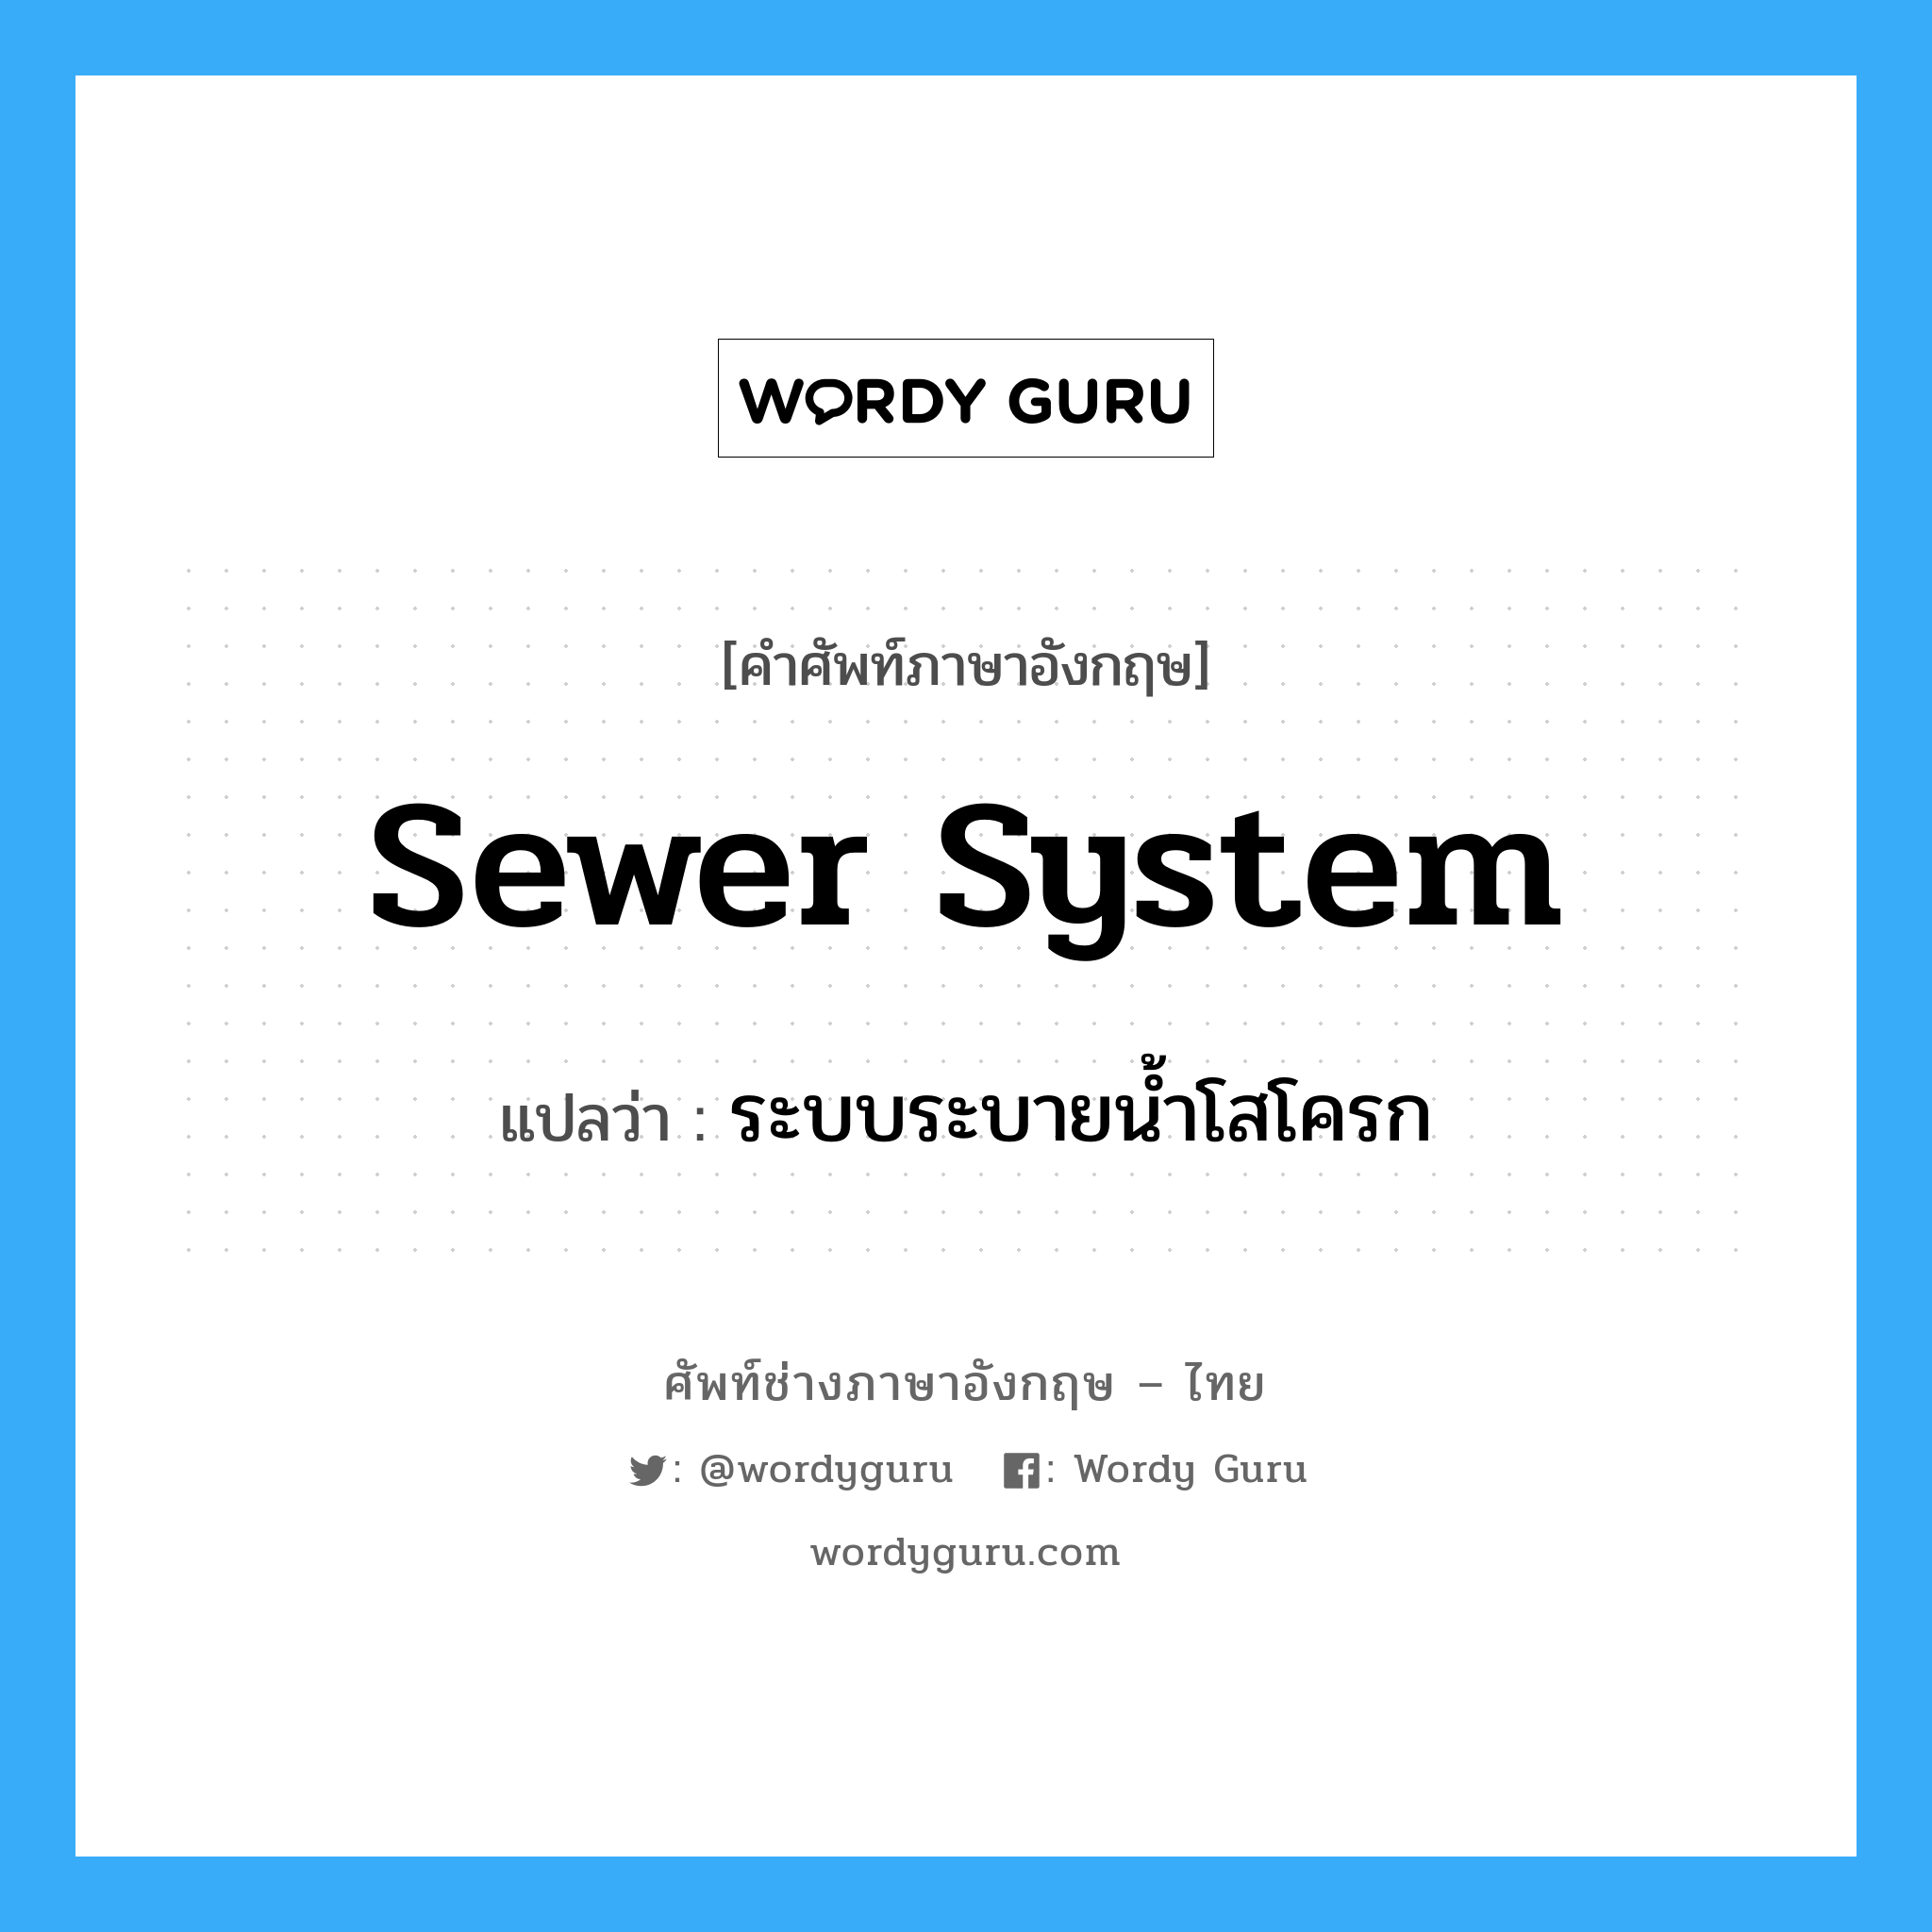 sewer system แปลว่า?, คำศัพท์ช่างภาษาอังกฤษ - ไทย sewer system คำศัพท์ภาษาอังกฤษ sewer system แปลว่า ระบบระบายน้ำโสโครก